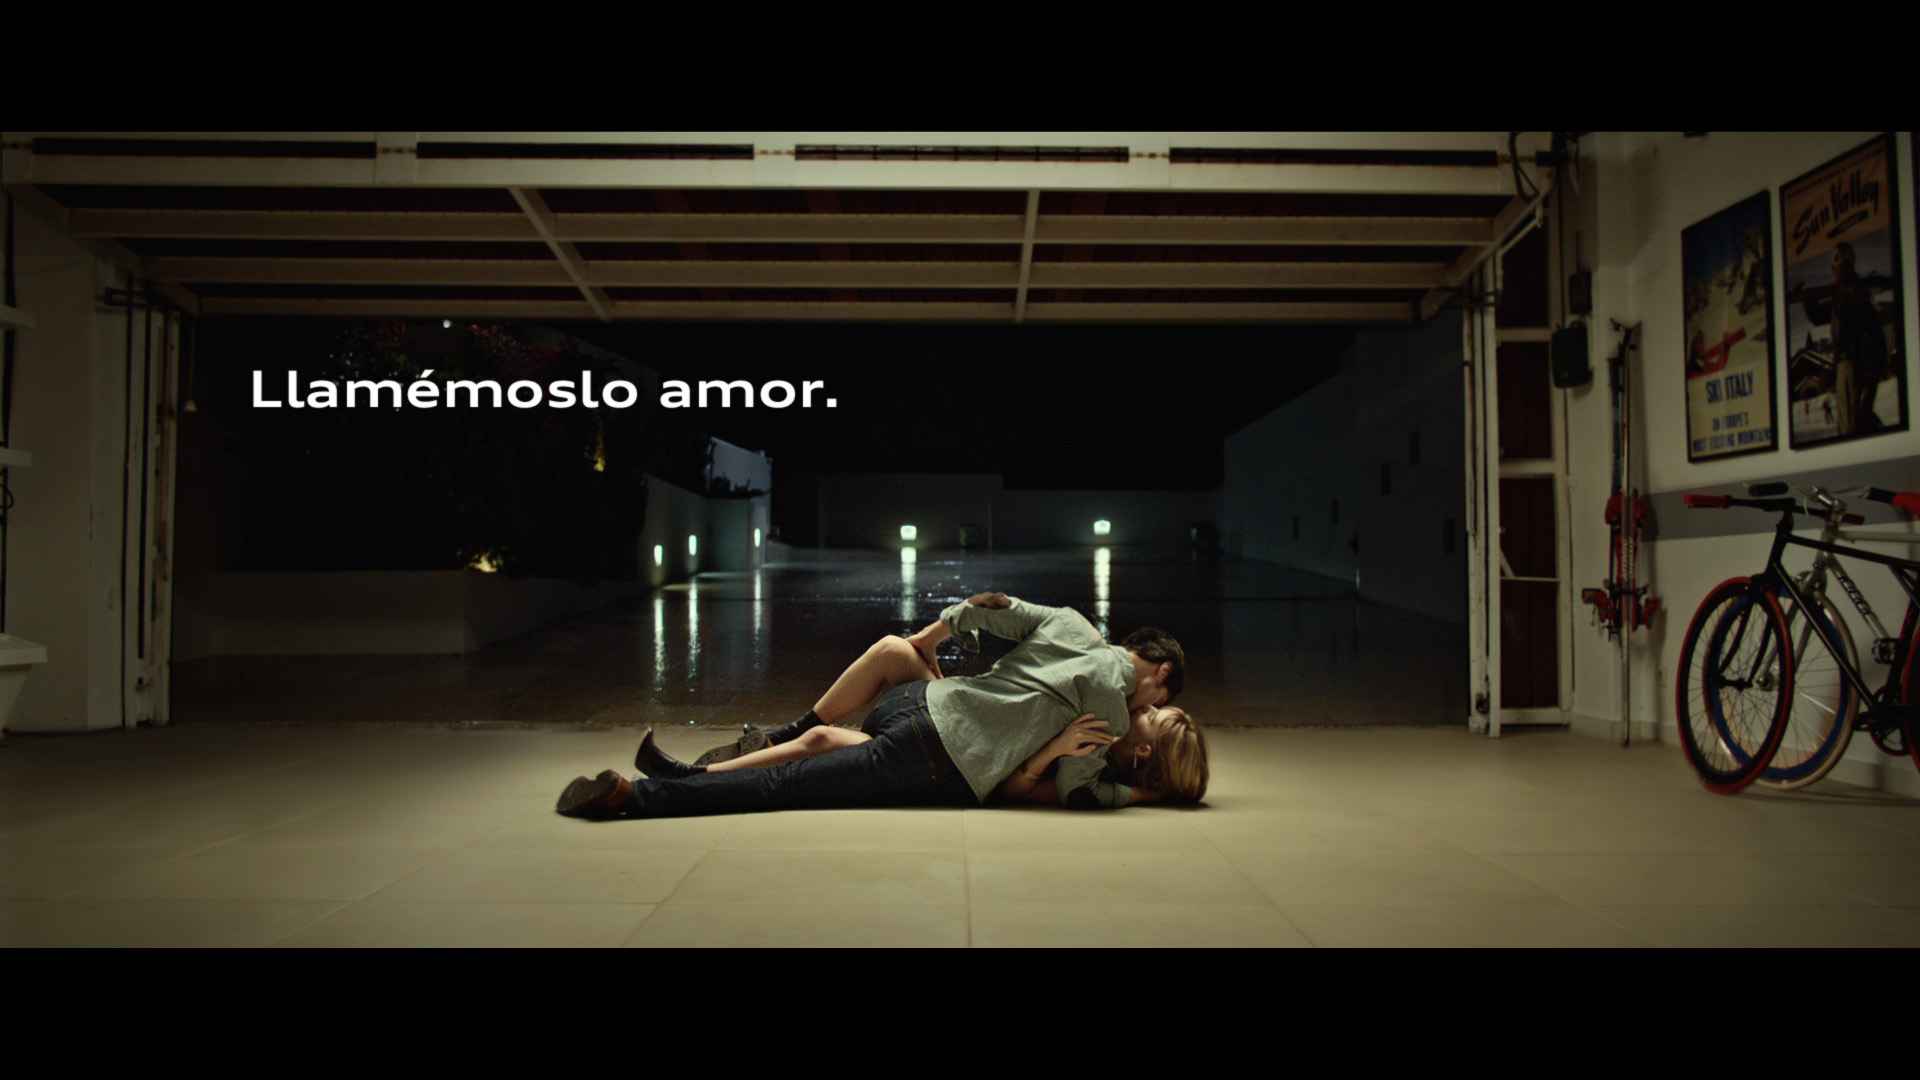 Portada de "Llamémoslo amor", nueva campaña de DDB España para el Audi A1 